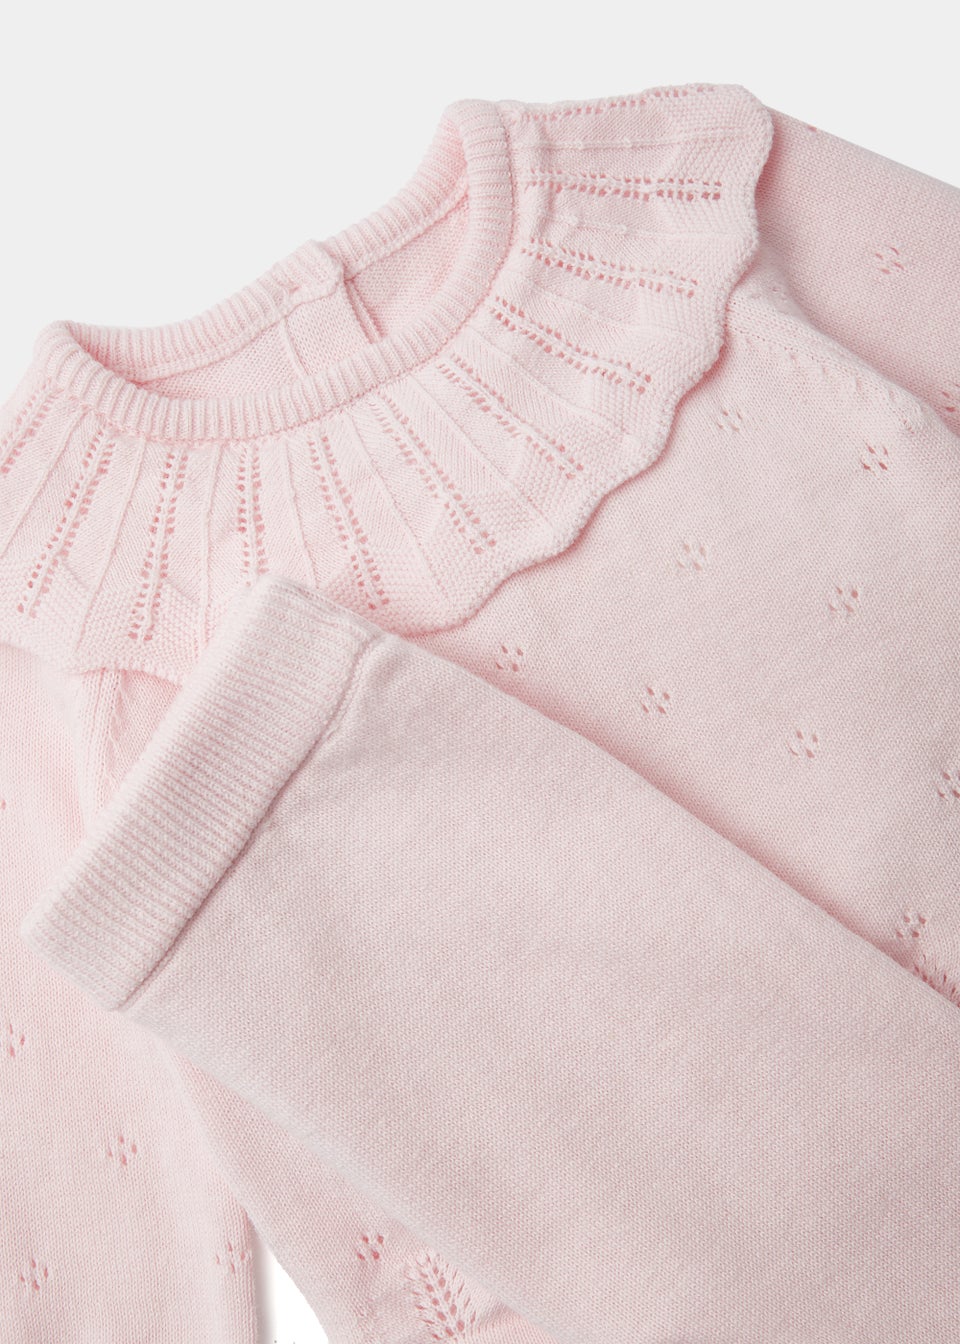 Baby 2 Piece Pink Layette Knitted Set (Newborn-12mths)